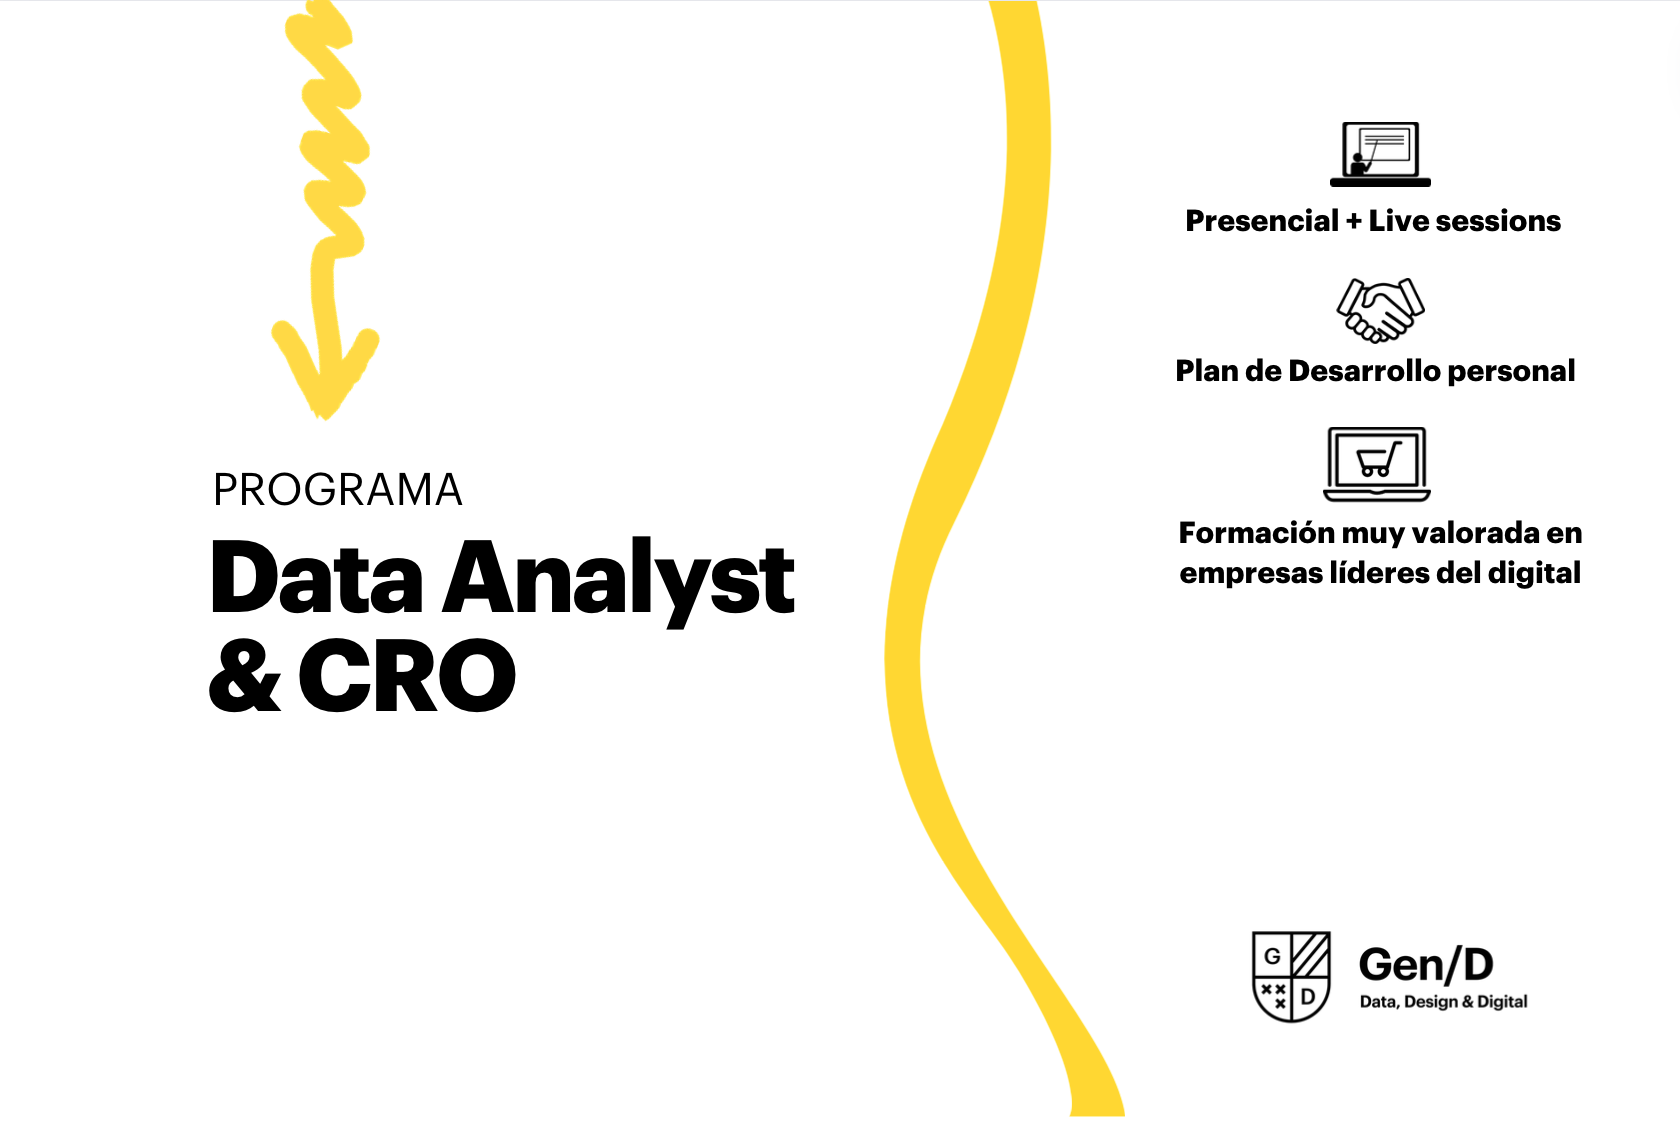 Data Analyst & CRO